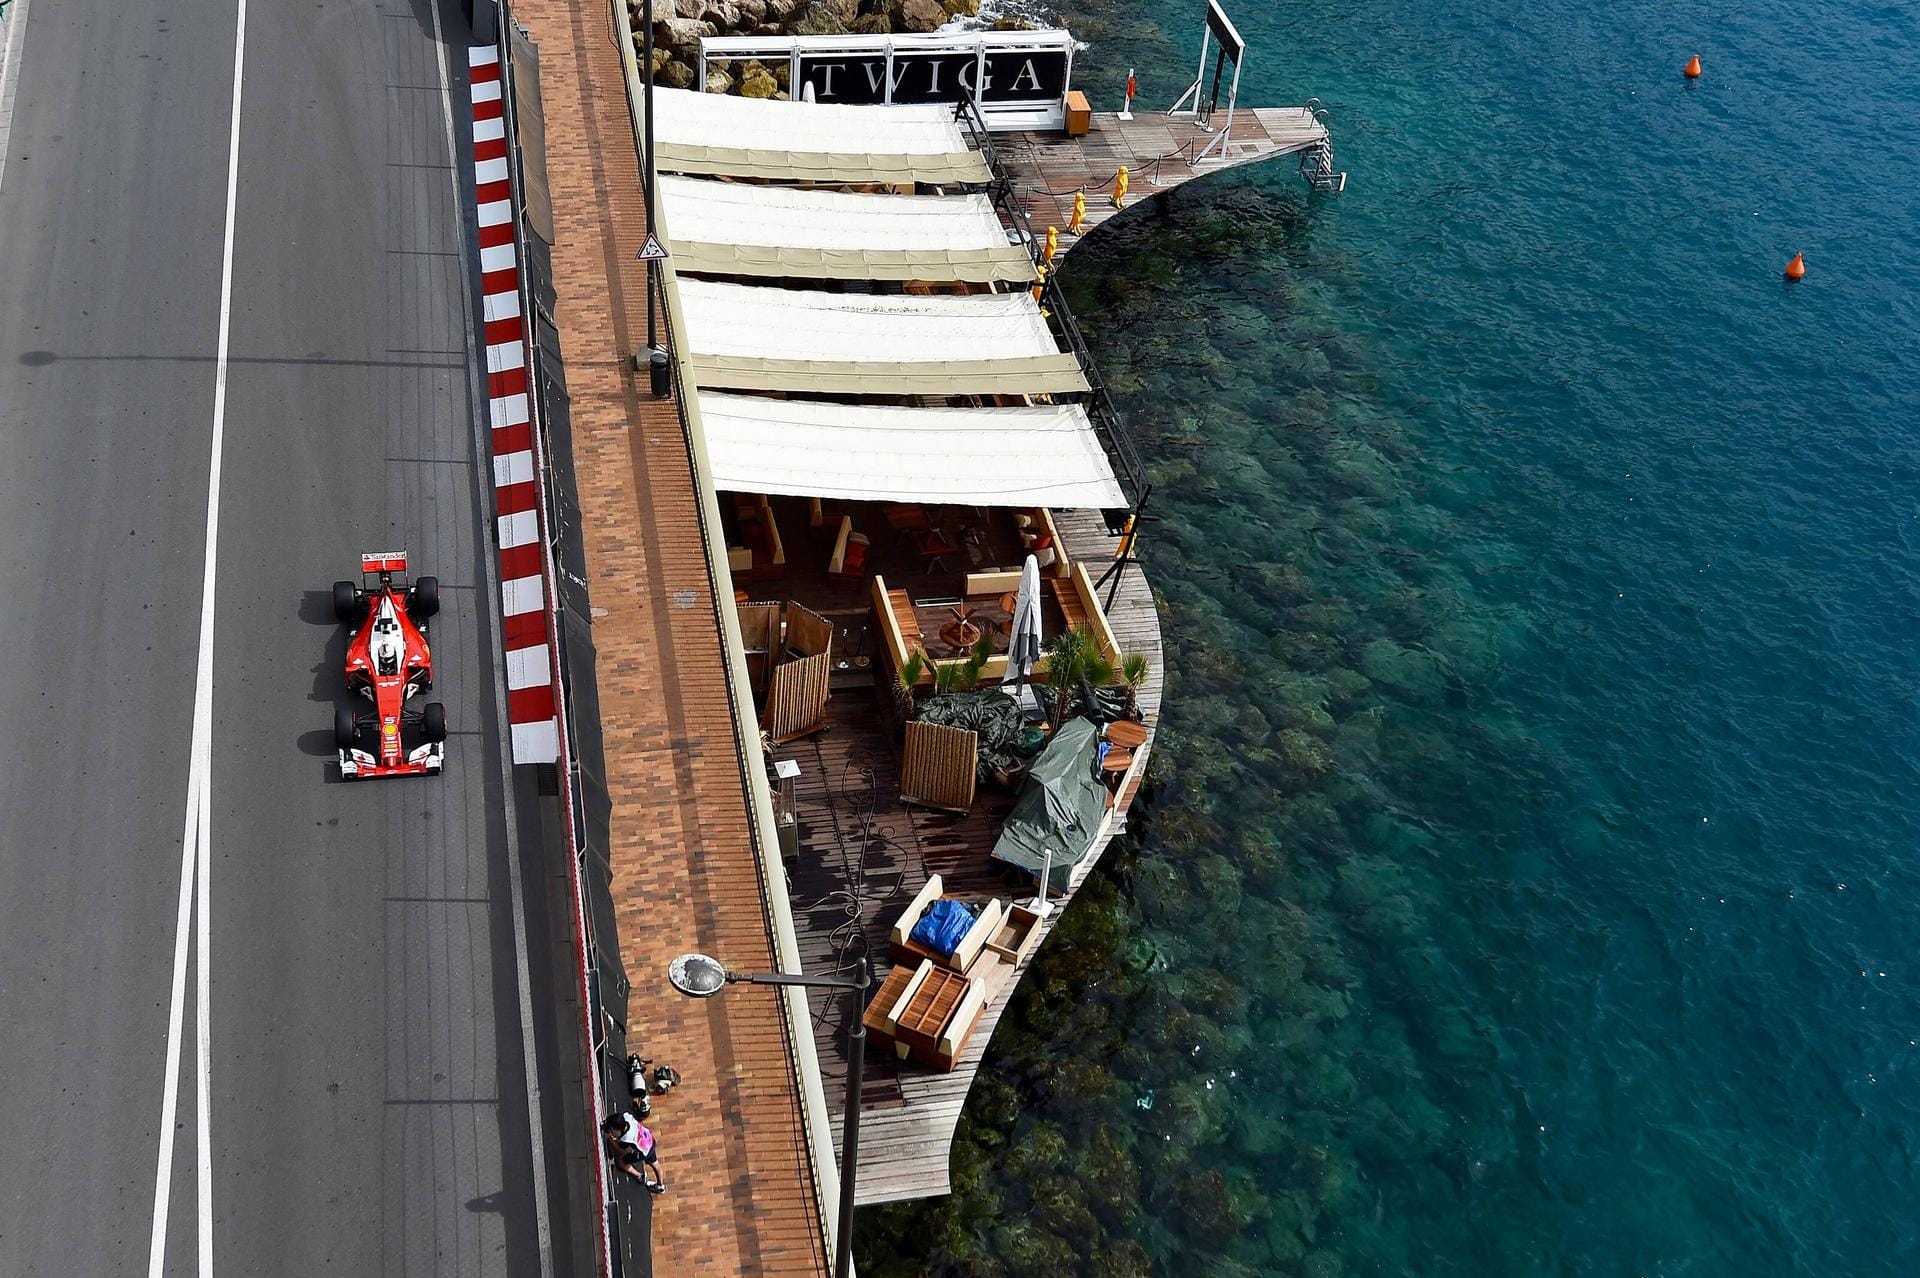 Die atemberaubende Aussicht auf das türkisfarbene Wasser konnte Sebastian Vettel beim Großen Preis von Monaco während des dritten freien Trainings leider nicht genießen.